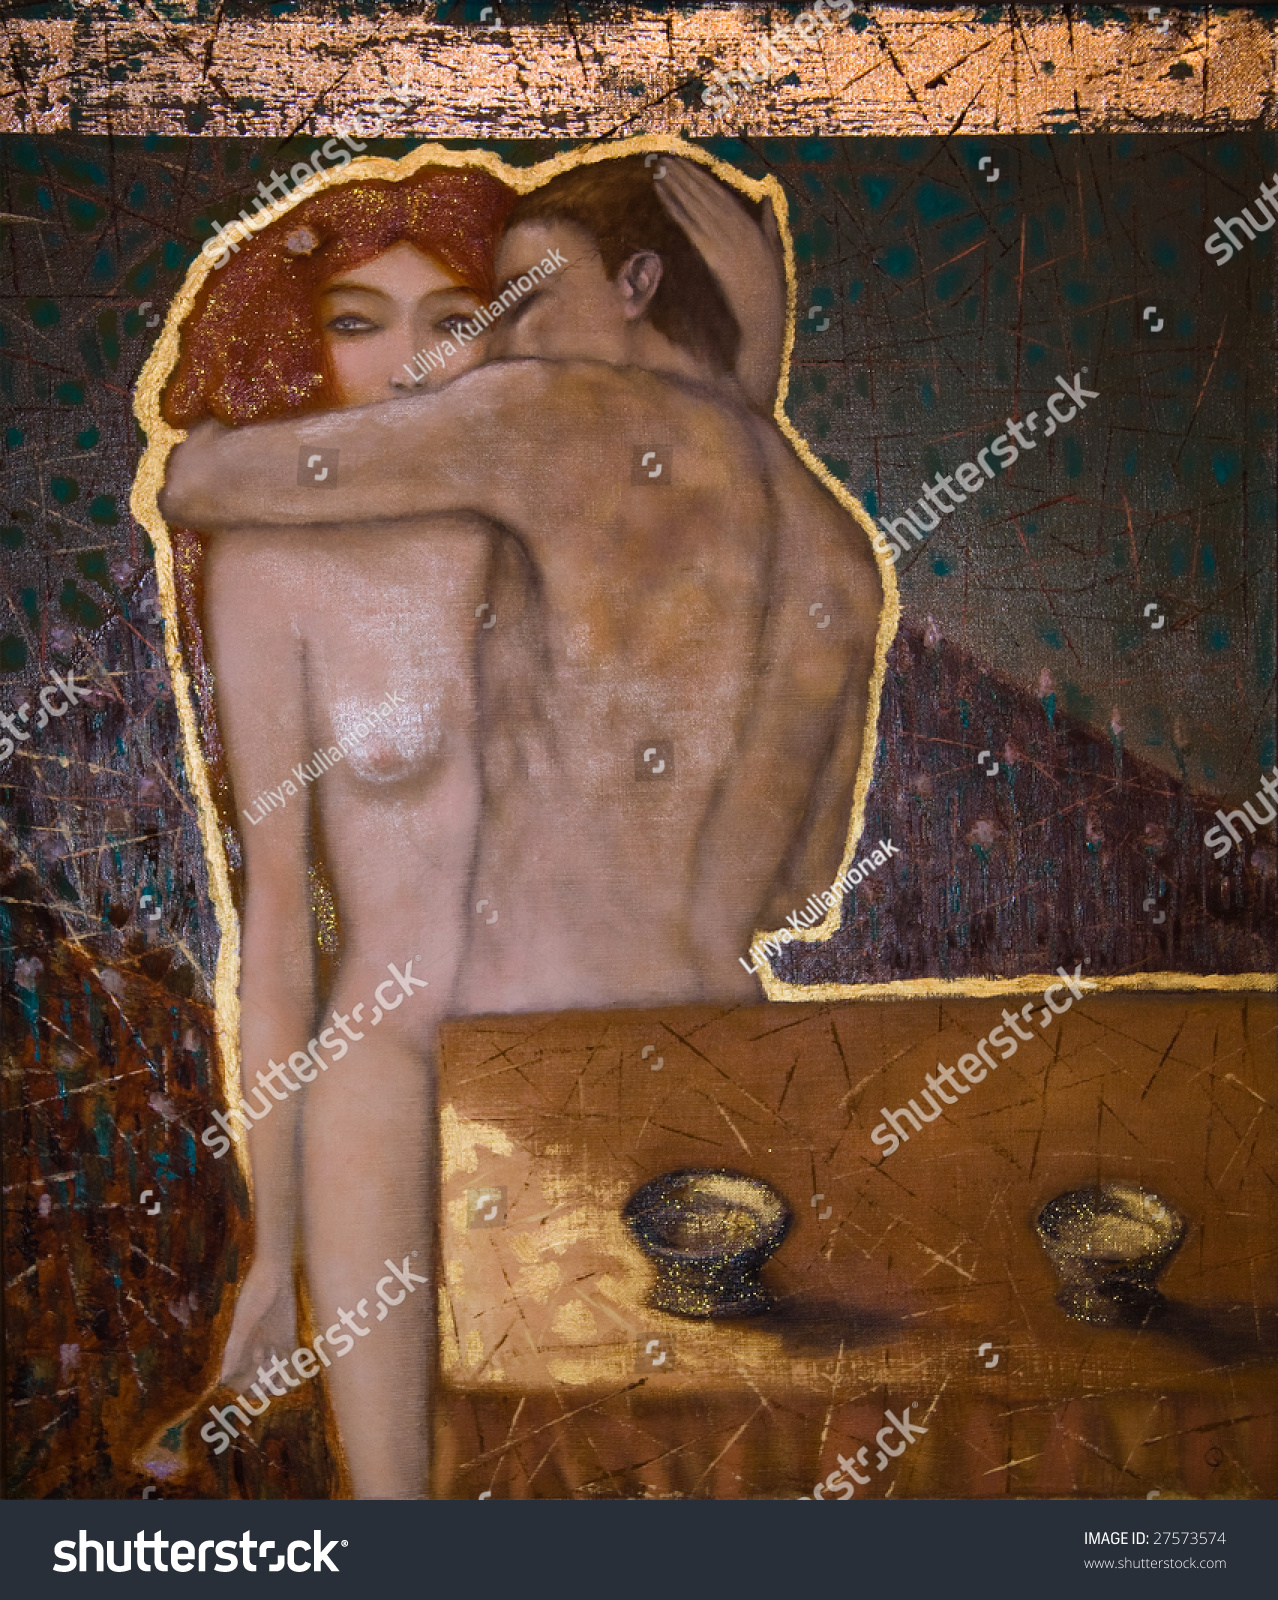 Naked Man And Woman madison iowa